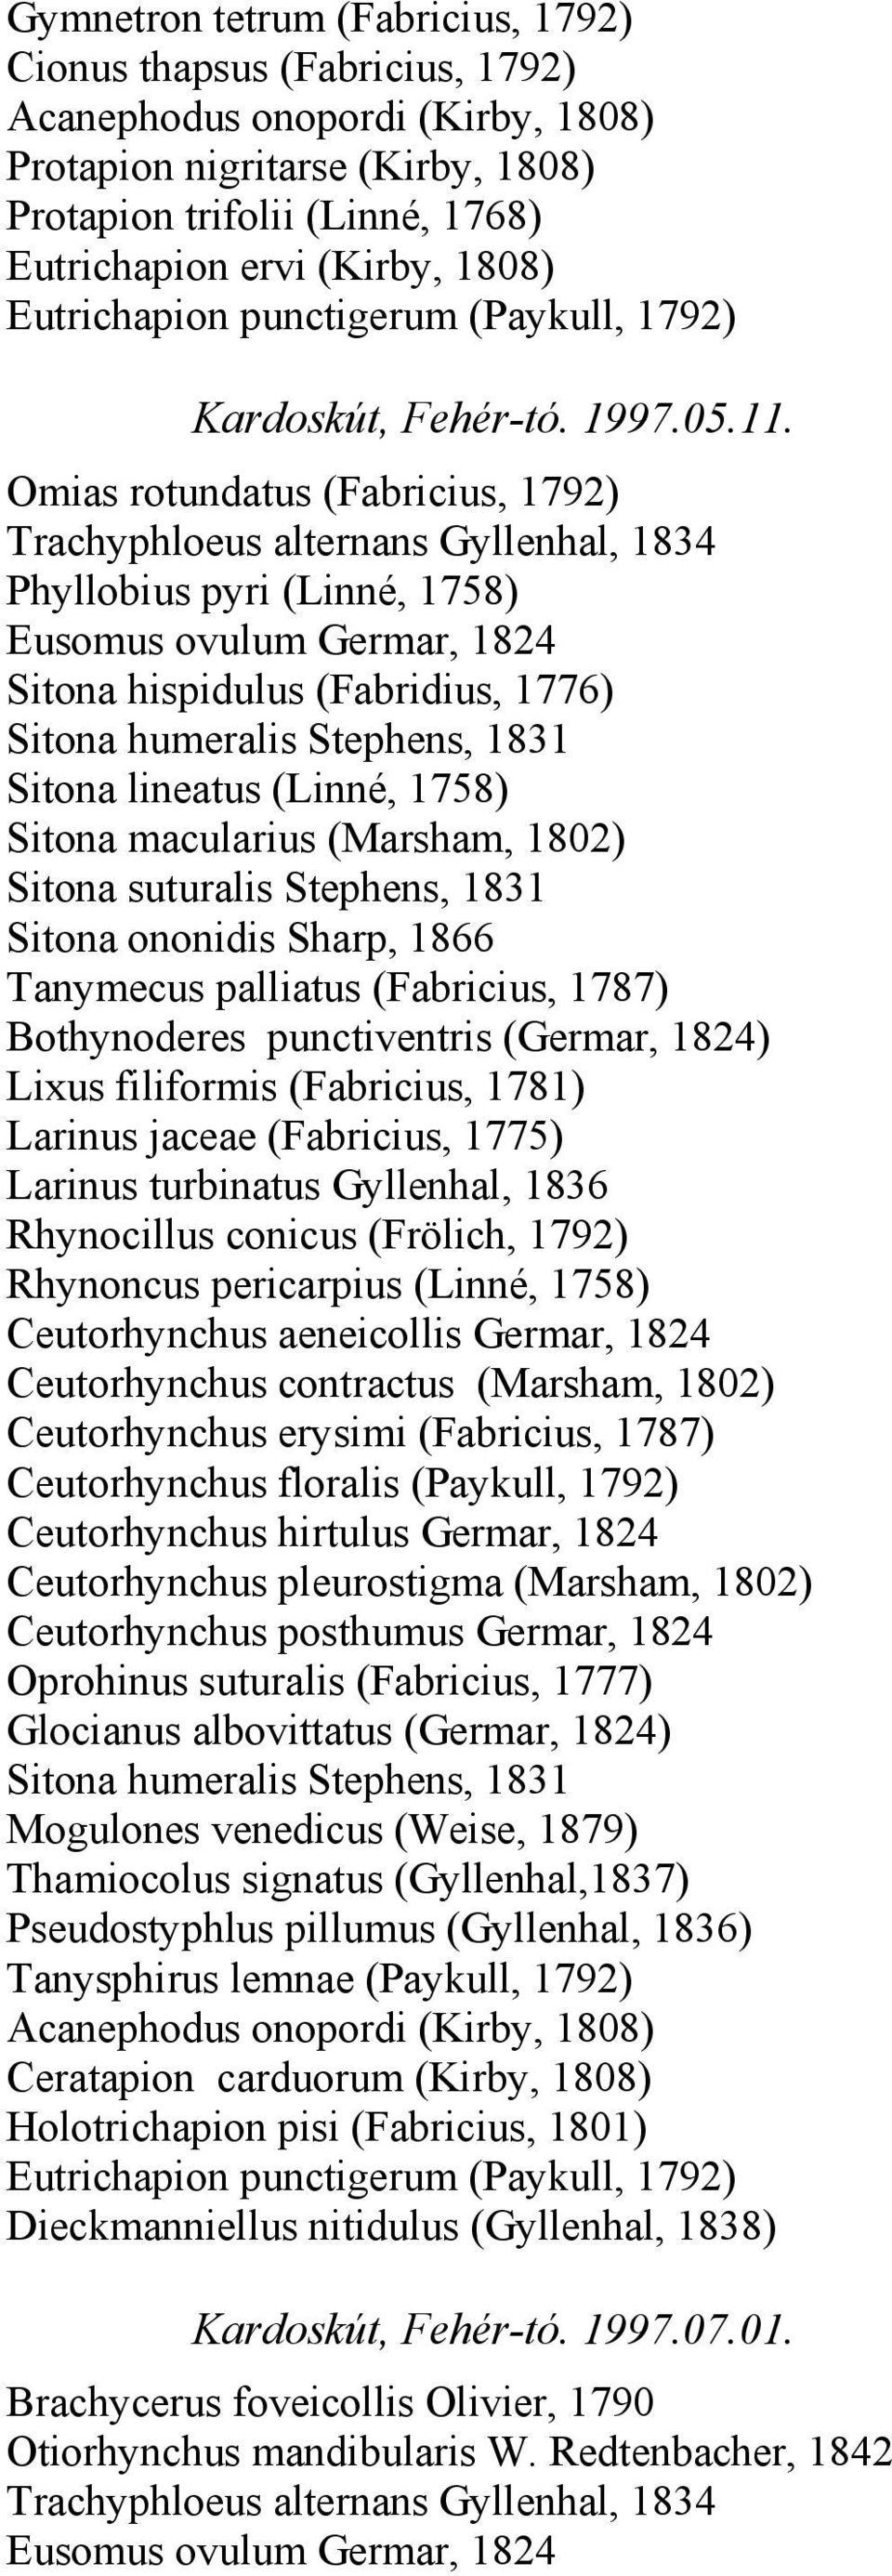 1866 Tanymecus palliatus (Fabricius, 1787) Bothynoderes punctiventris (Germar, 1824) Lixus filiformis (Fabricius, 1781) Larinus jaceae (Fabricius, 1775) Larinus turbinatus Gyllenhal, 1836 Rhynocillus